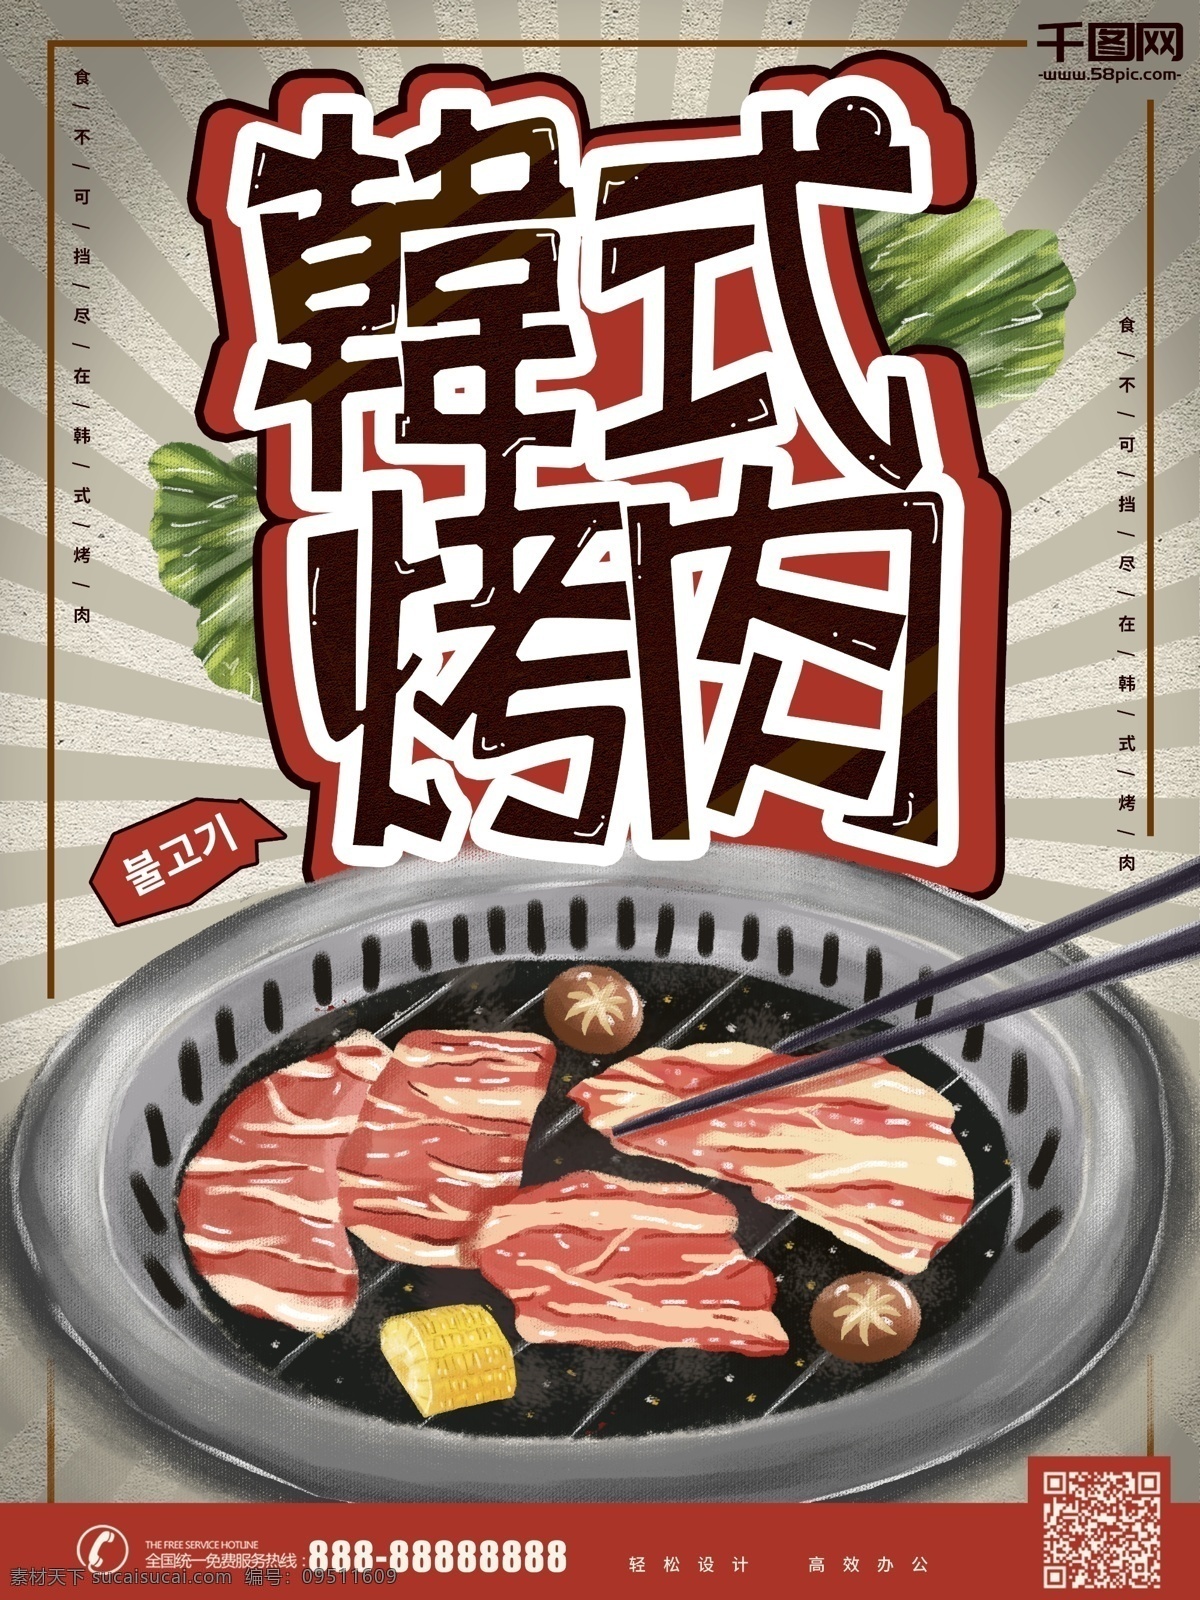 原创 手绘 韩式 烤肉 插 画风 海报 卡通 pop 烧烤 插画 宣传 韩式烤肉 韩国烤肉